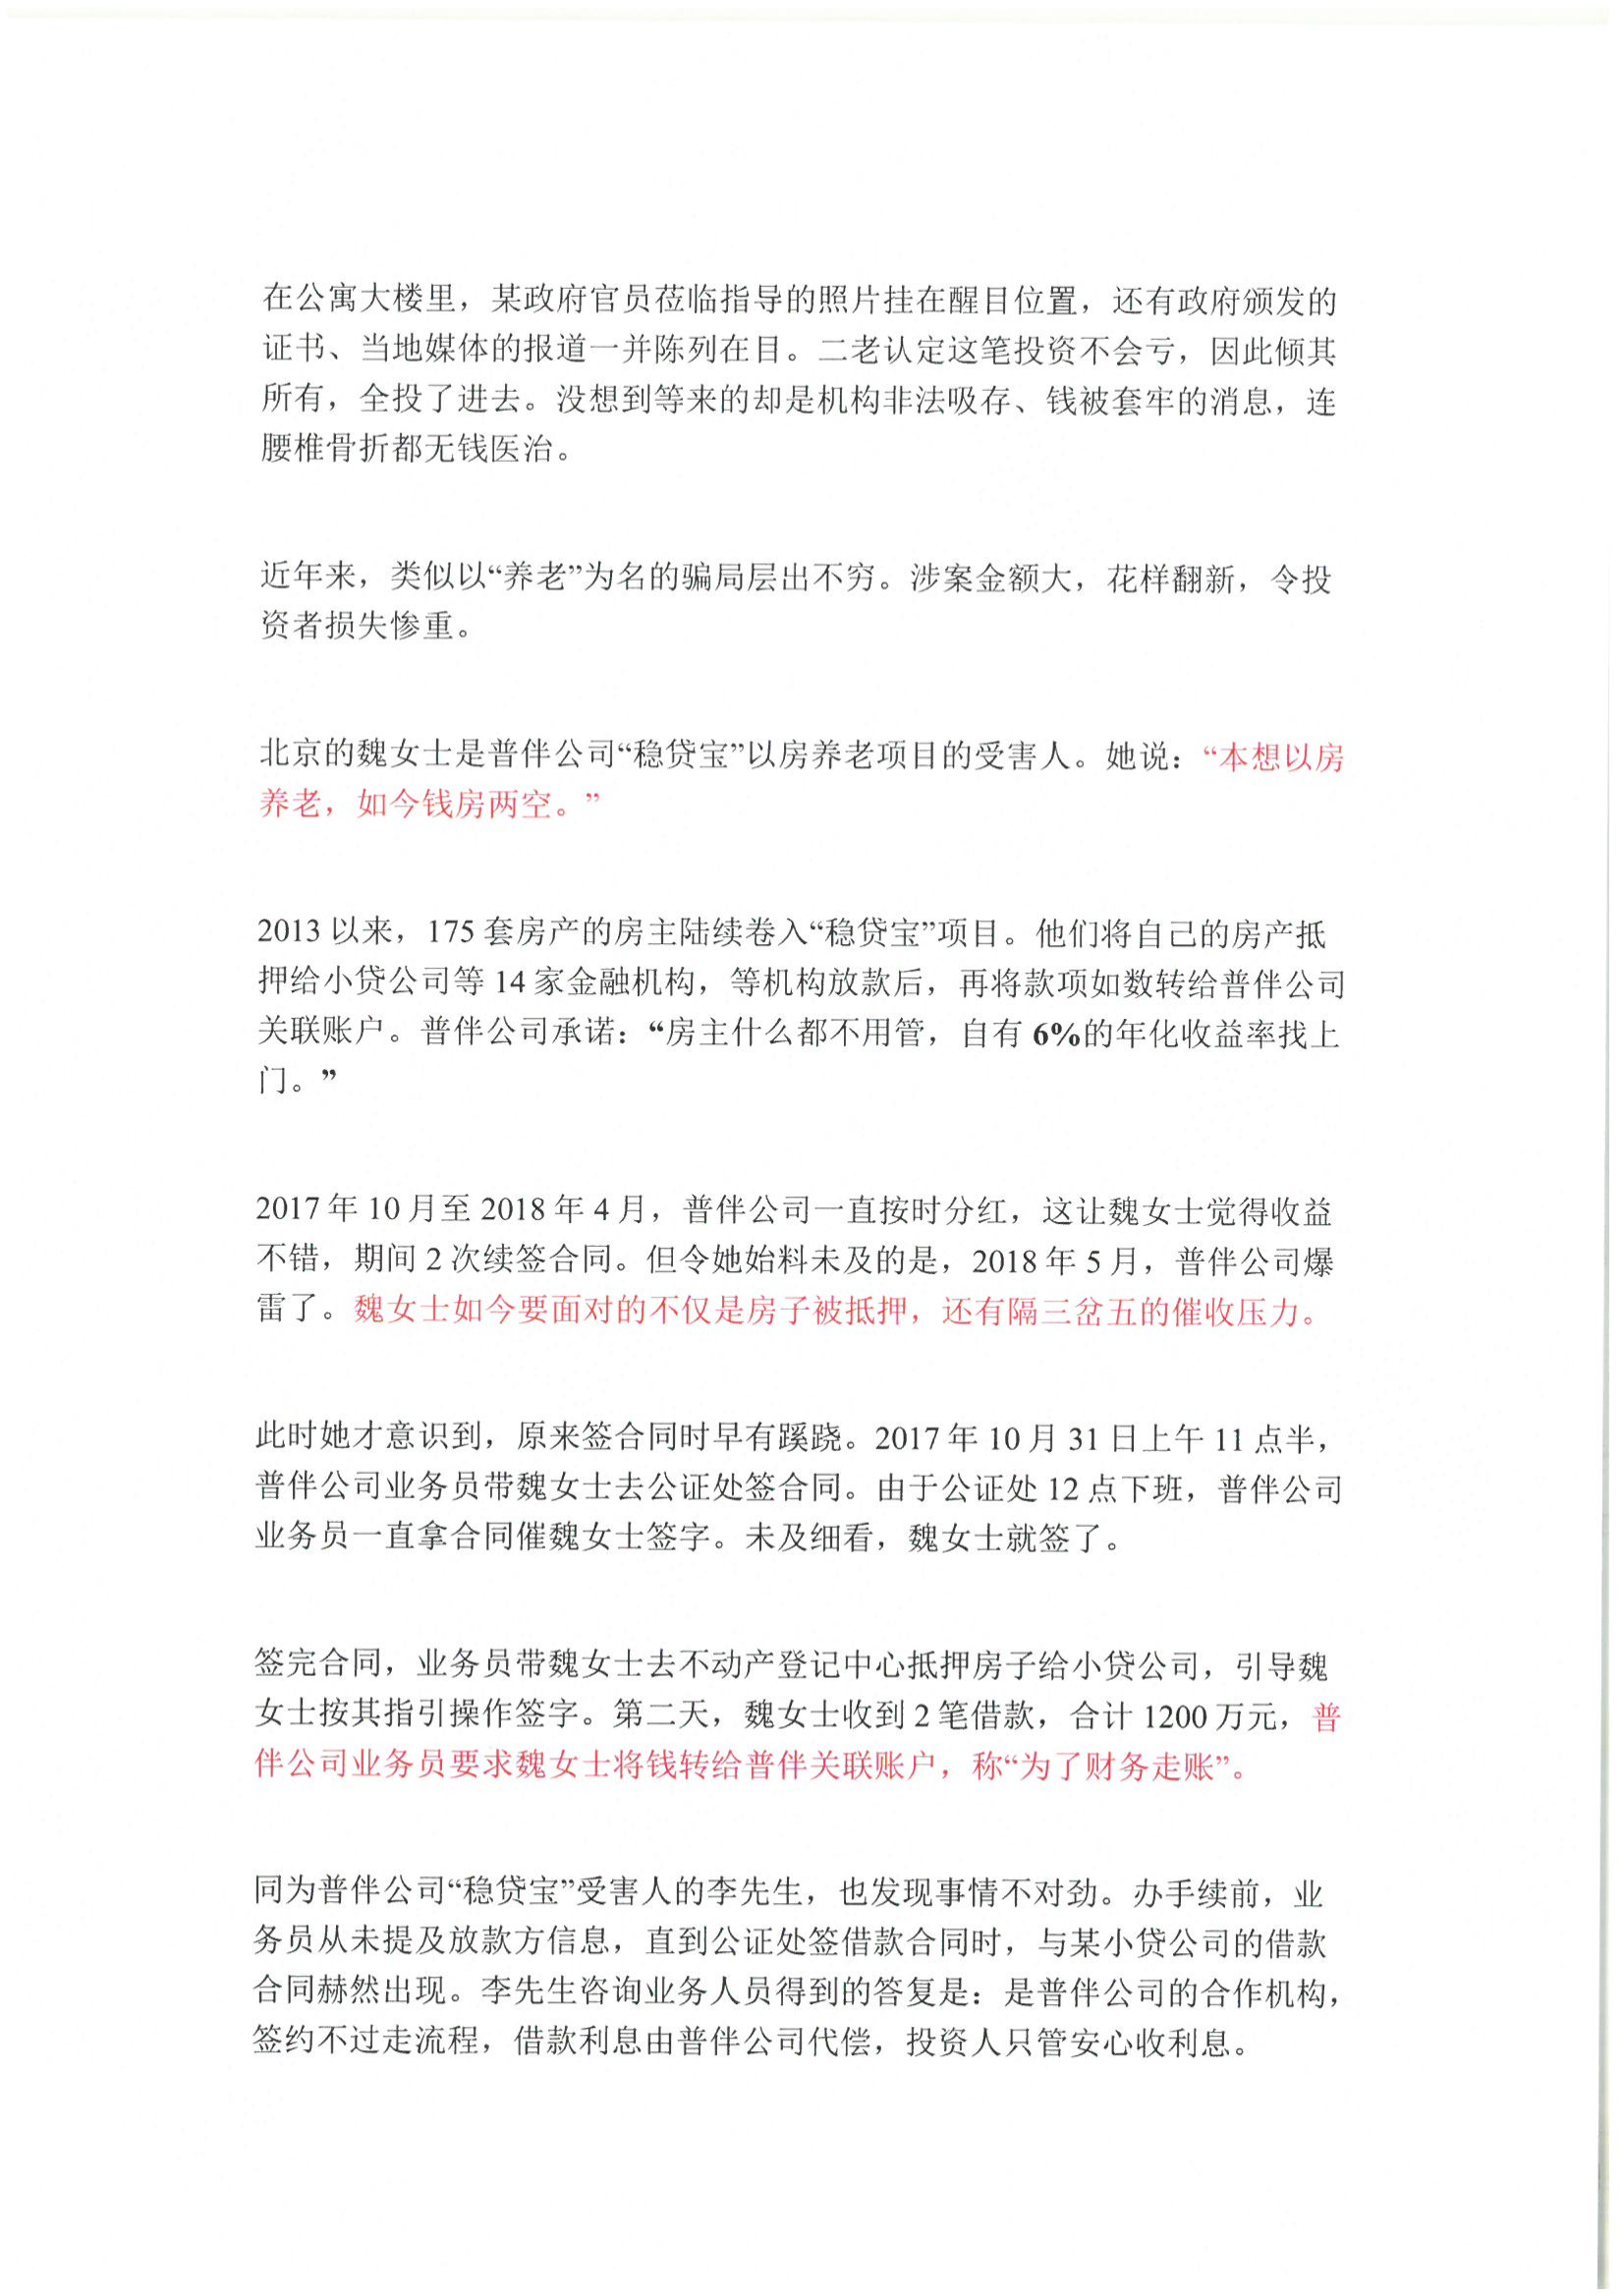 6、北京市公证协会风险提示【2021年第1号】_05